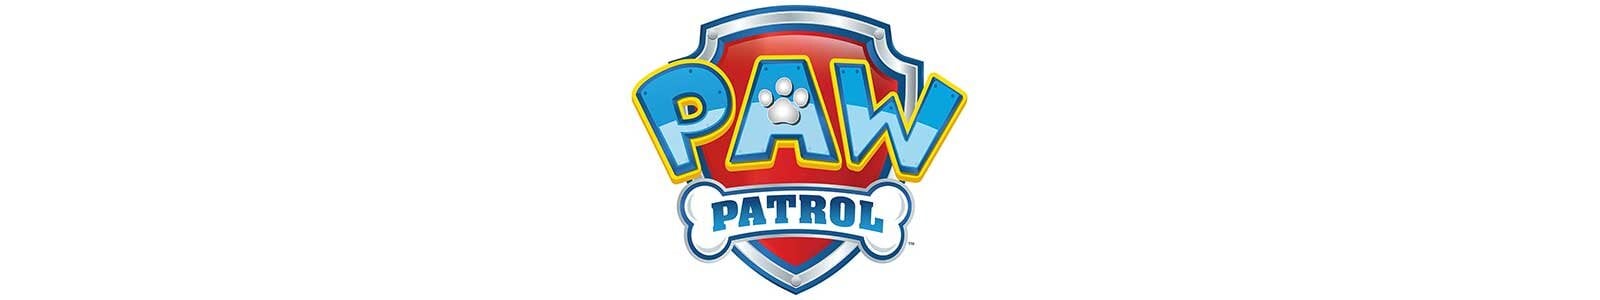 Paw Patrol Versiering